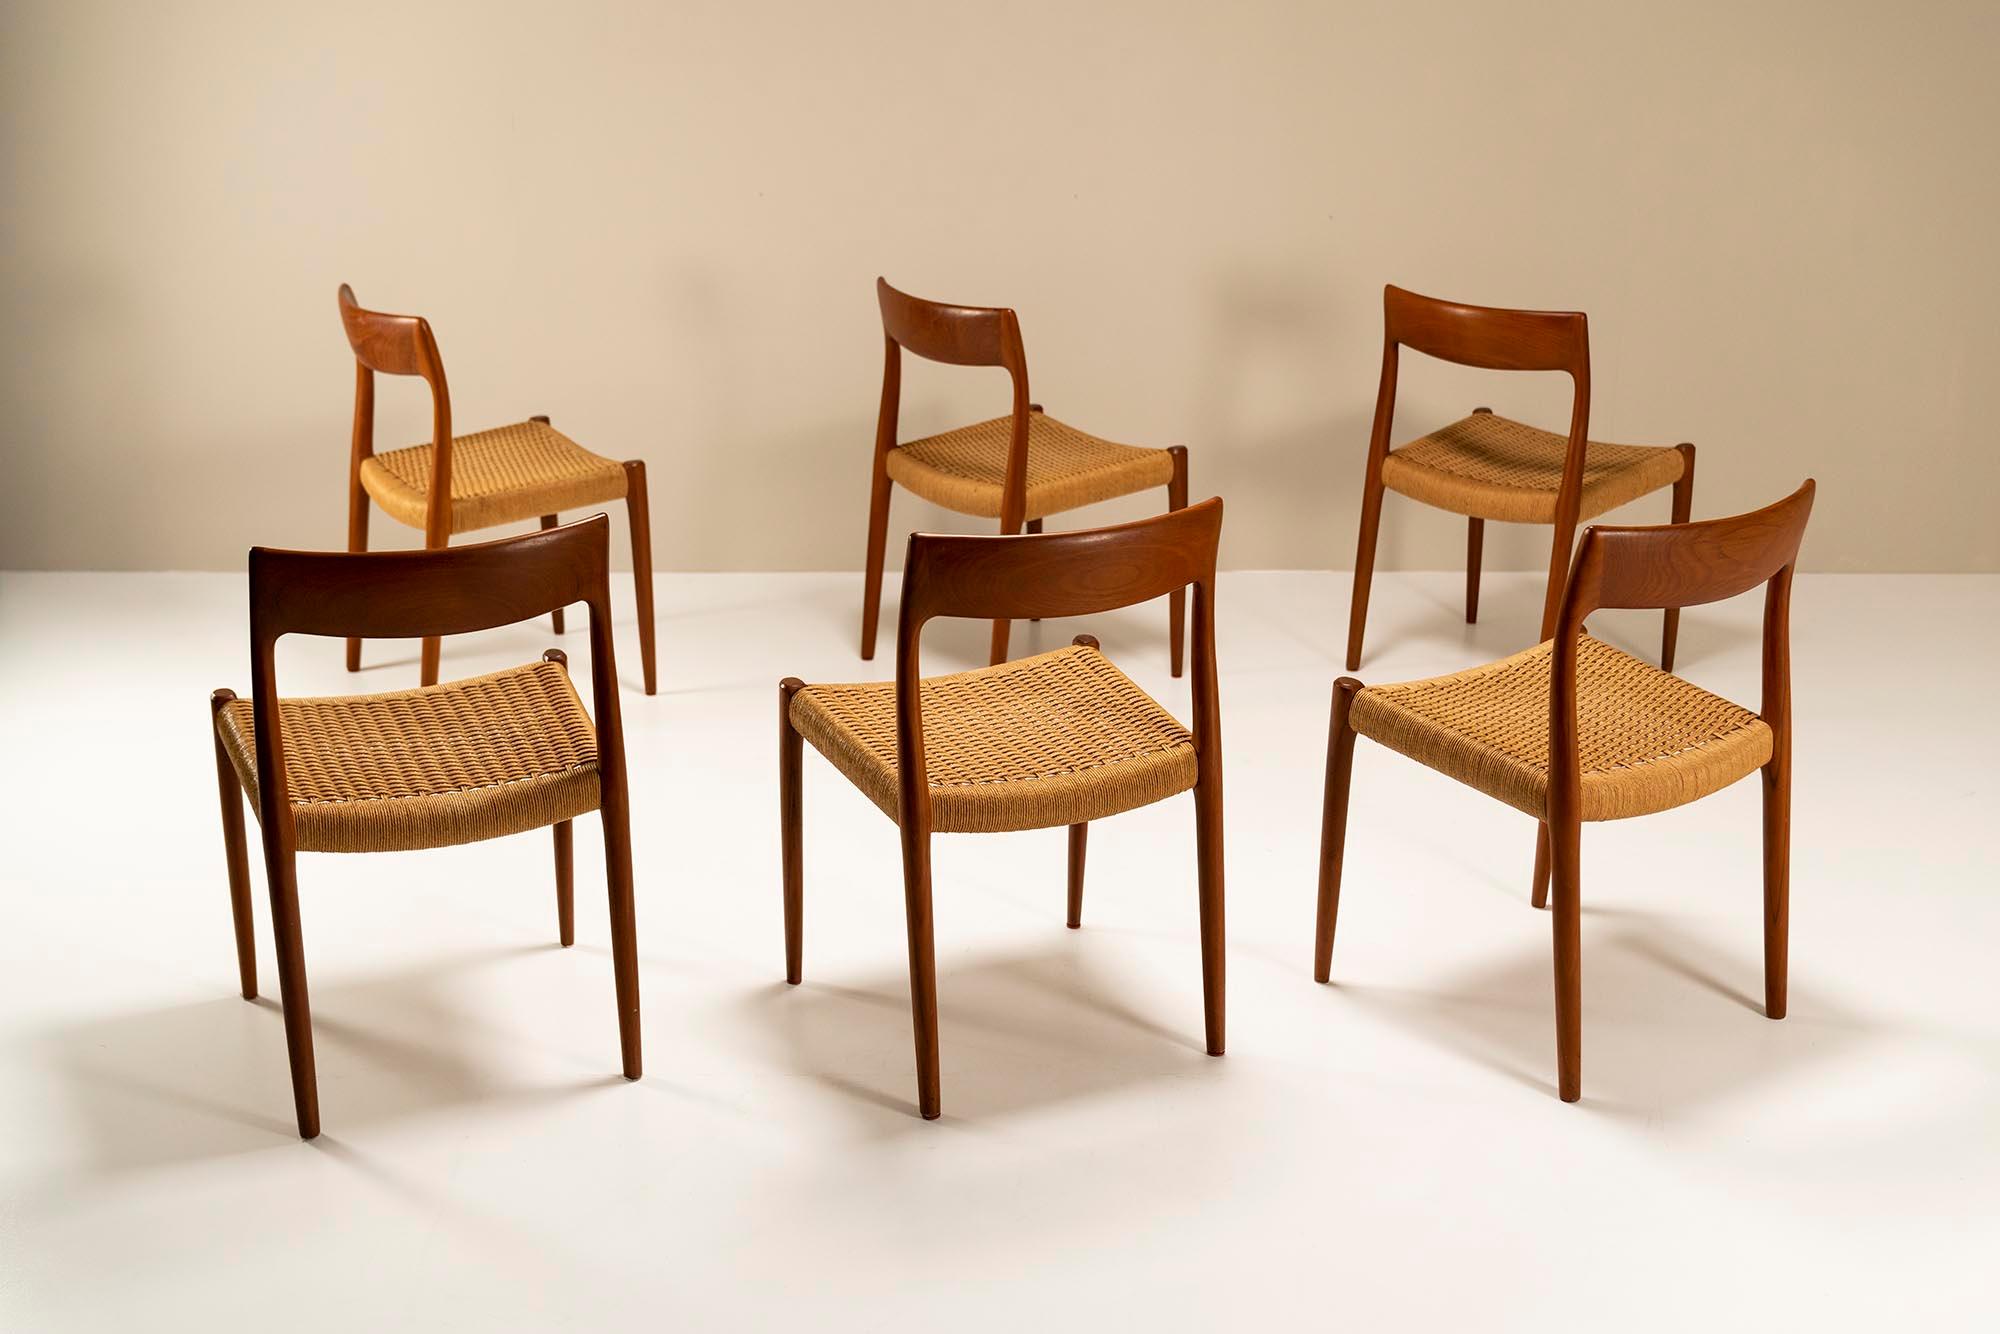 Un magnifique ensemble de six chaises de salle à manger légendaires modèle 77 du designer danois Niels Otto Møller de 1959. Apparemment simple, mais très ingénieusement conçu par les maîtres artisans de J.L Møbelfabrik. Les connexions dont les